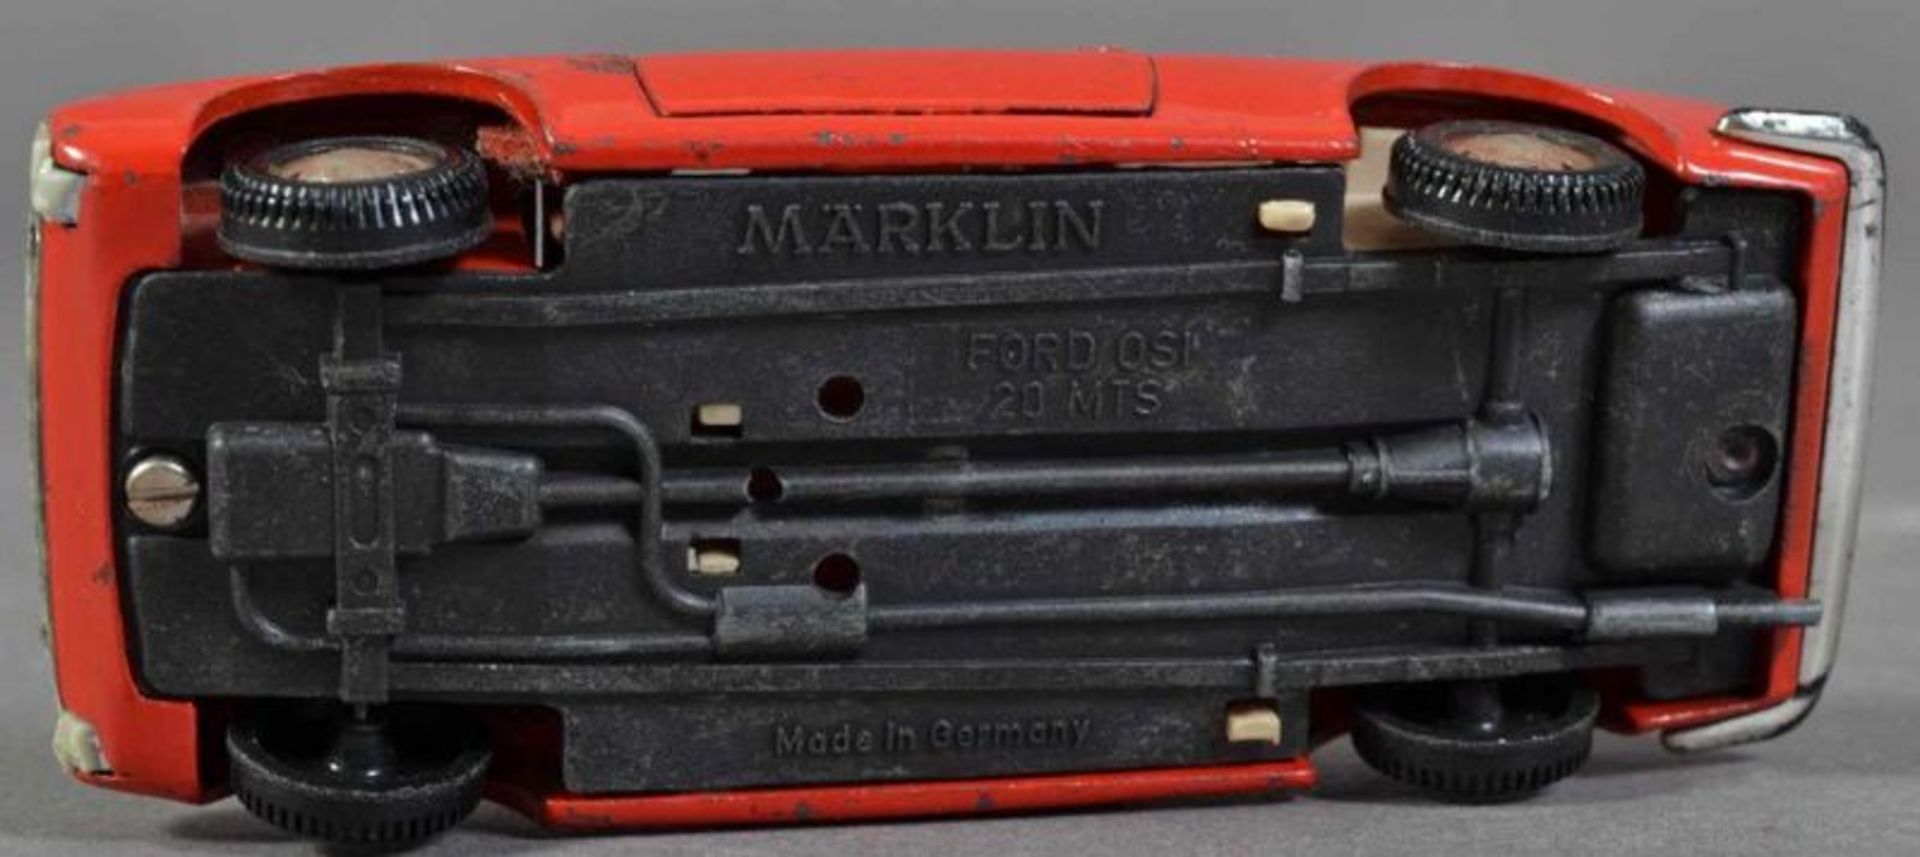 "FORD Dsi 20 MTS" - Märklin. Metall, rot lackiert. Länge 10 cm. Kennzeichen "S-VW 53". Bespielter - Image 12 of 12